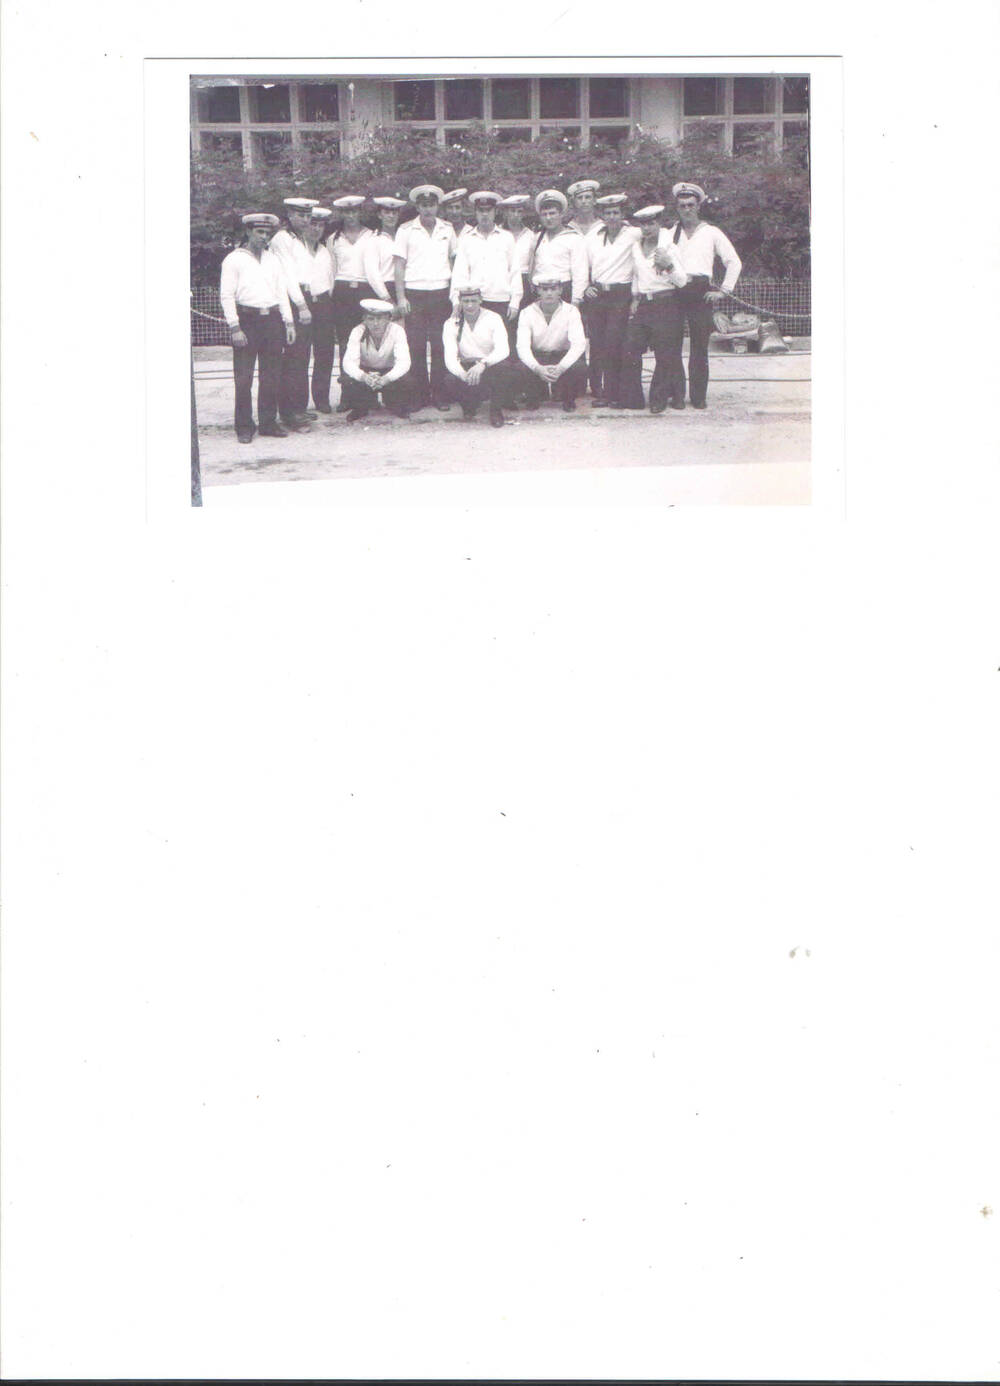 Фотография - копия
групповая,  моряков  срочной  военной  службы  в  парадной  одежде